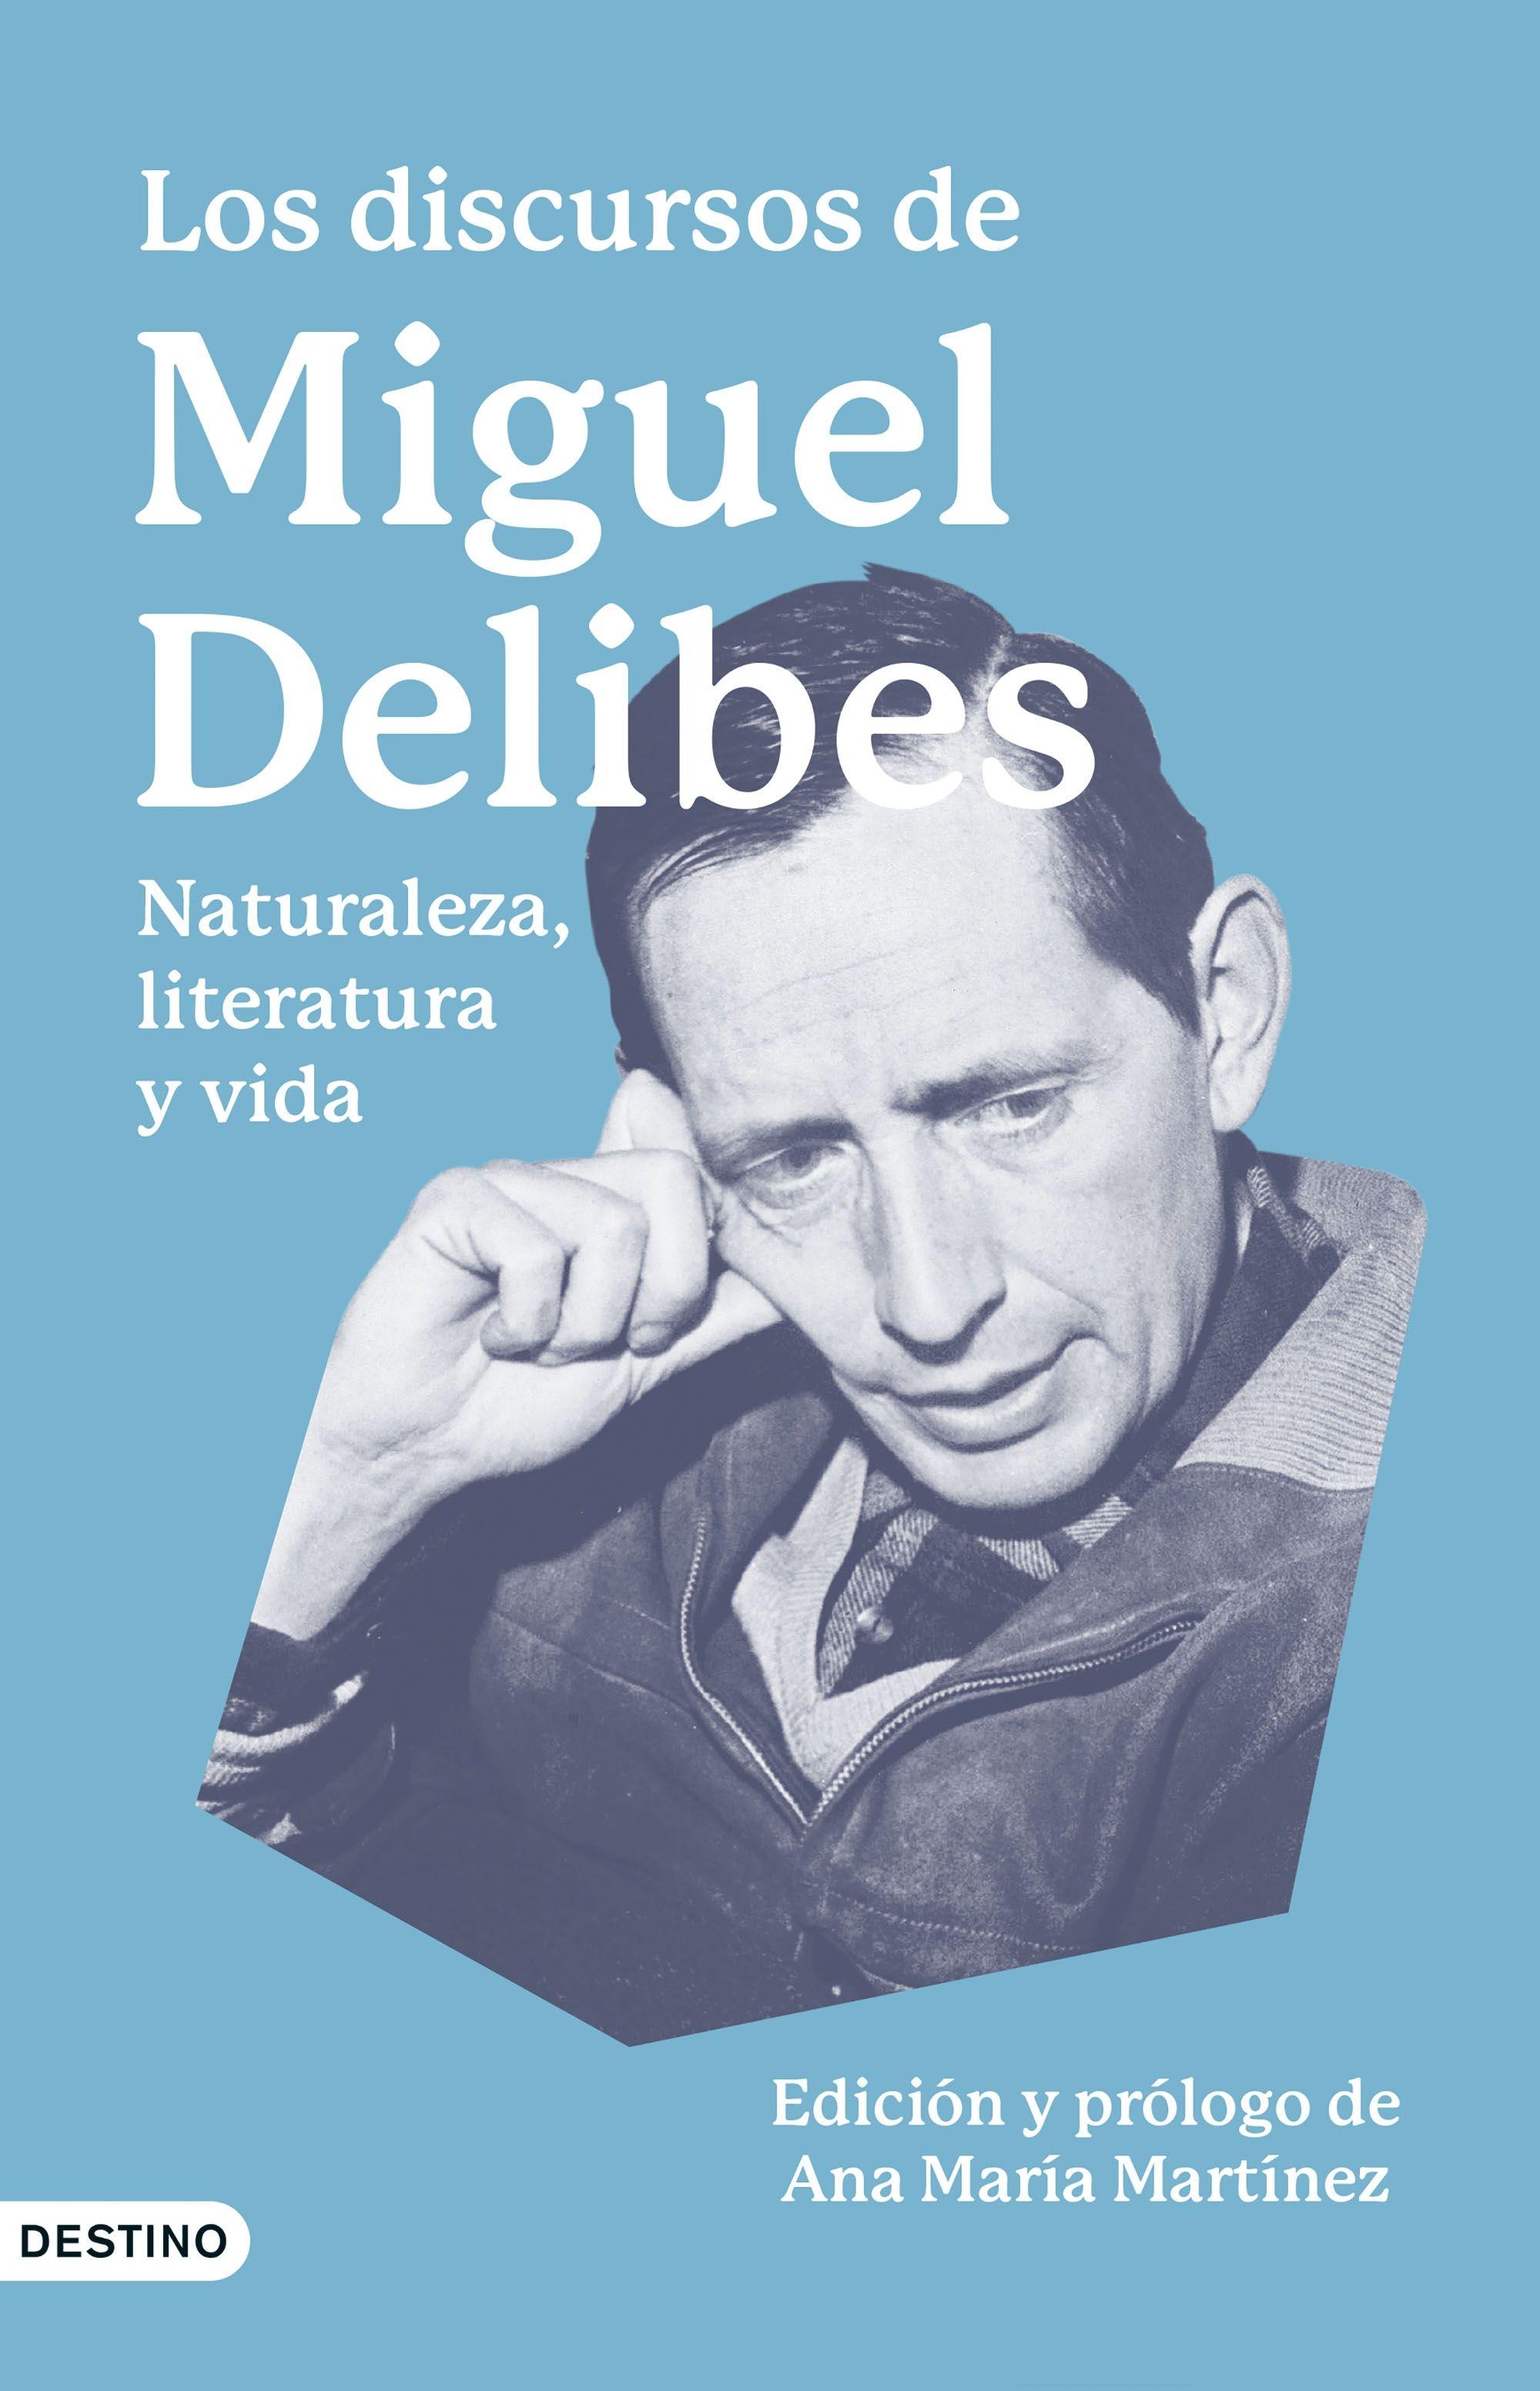 Discursos de Miguel Delibes, Los "Naturaleza, literatura y vida"